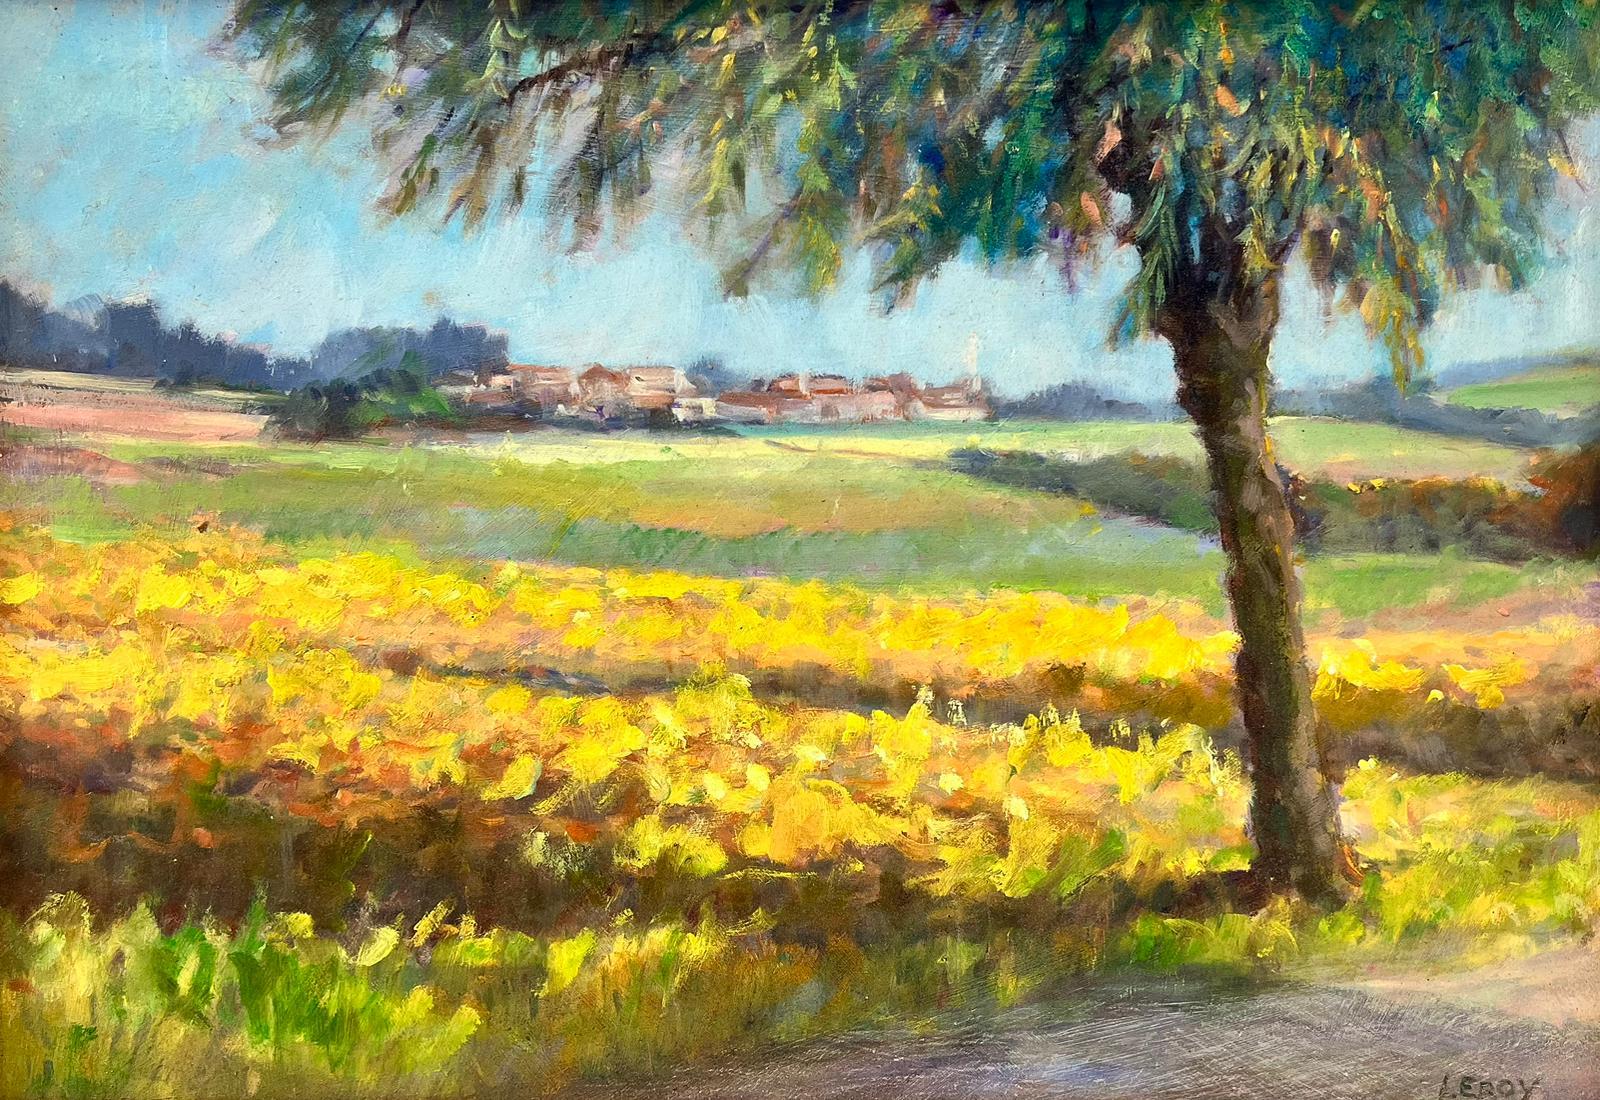 R.Leroy Landscape Painting - Auvers-sur-Oise France Golden Farm Fields Rural Landscape Signed Oil Painting